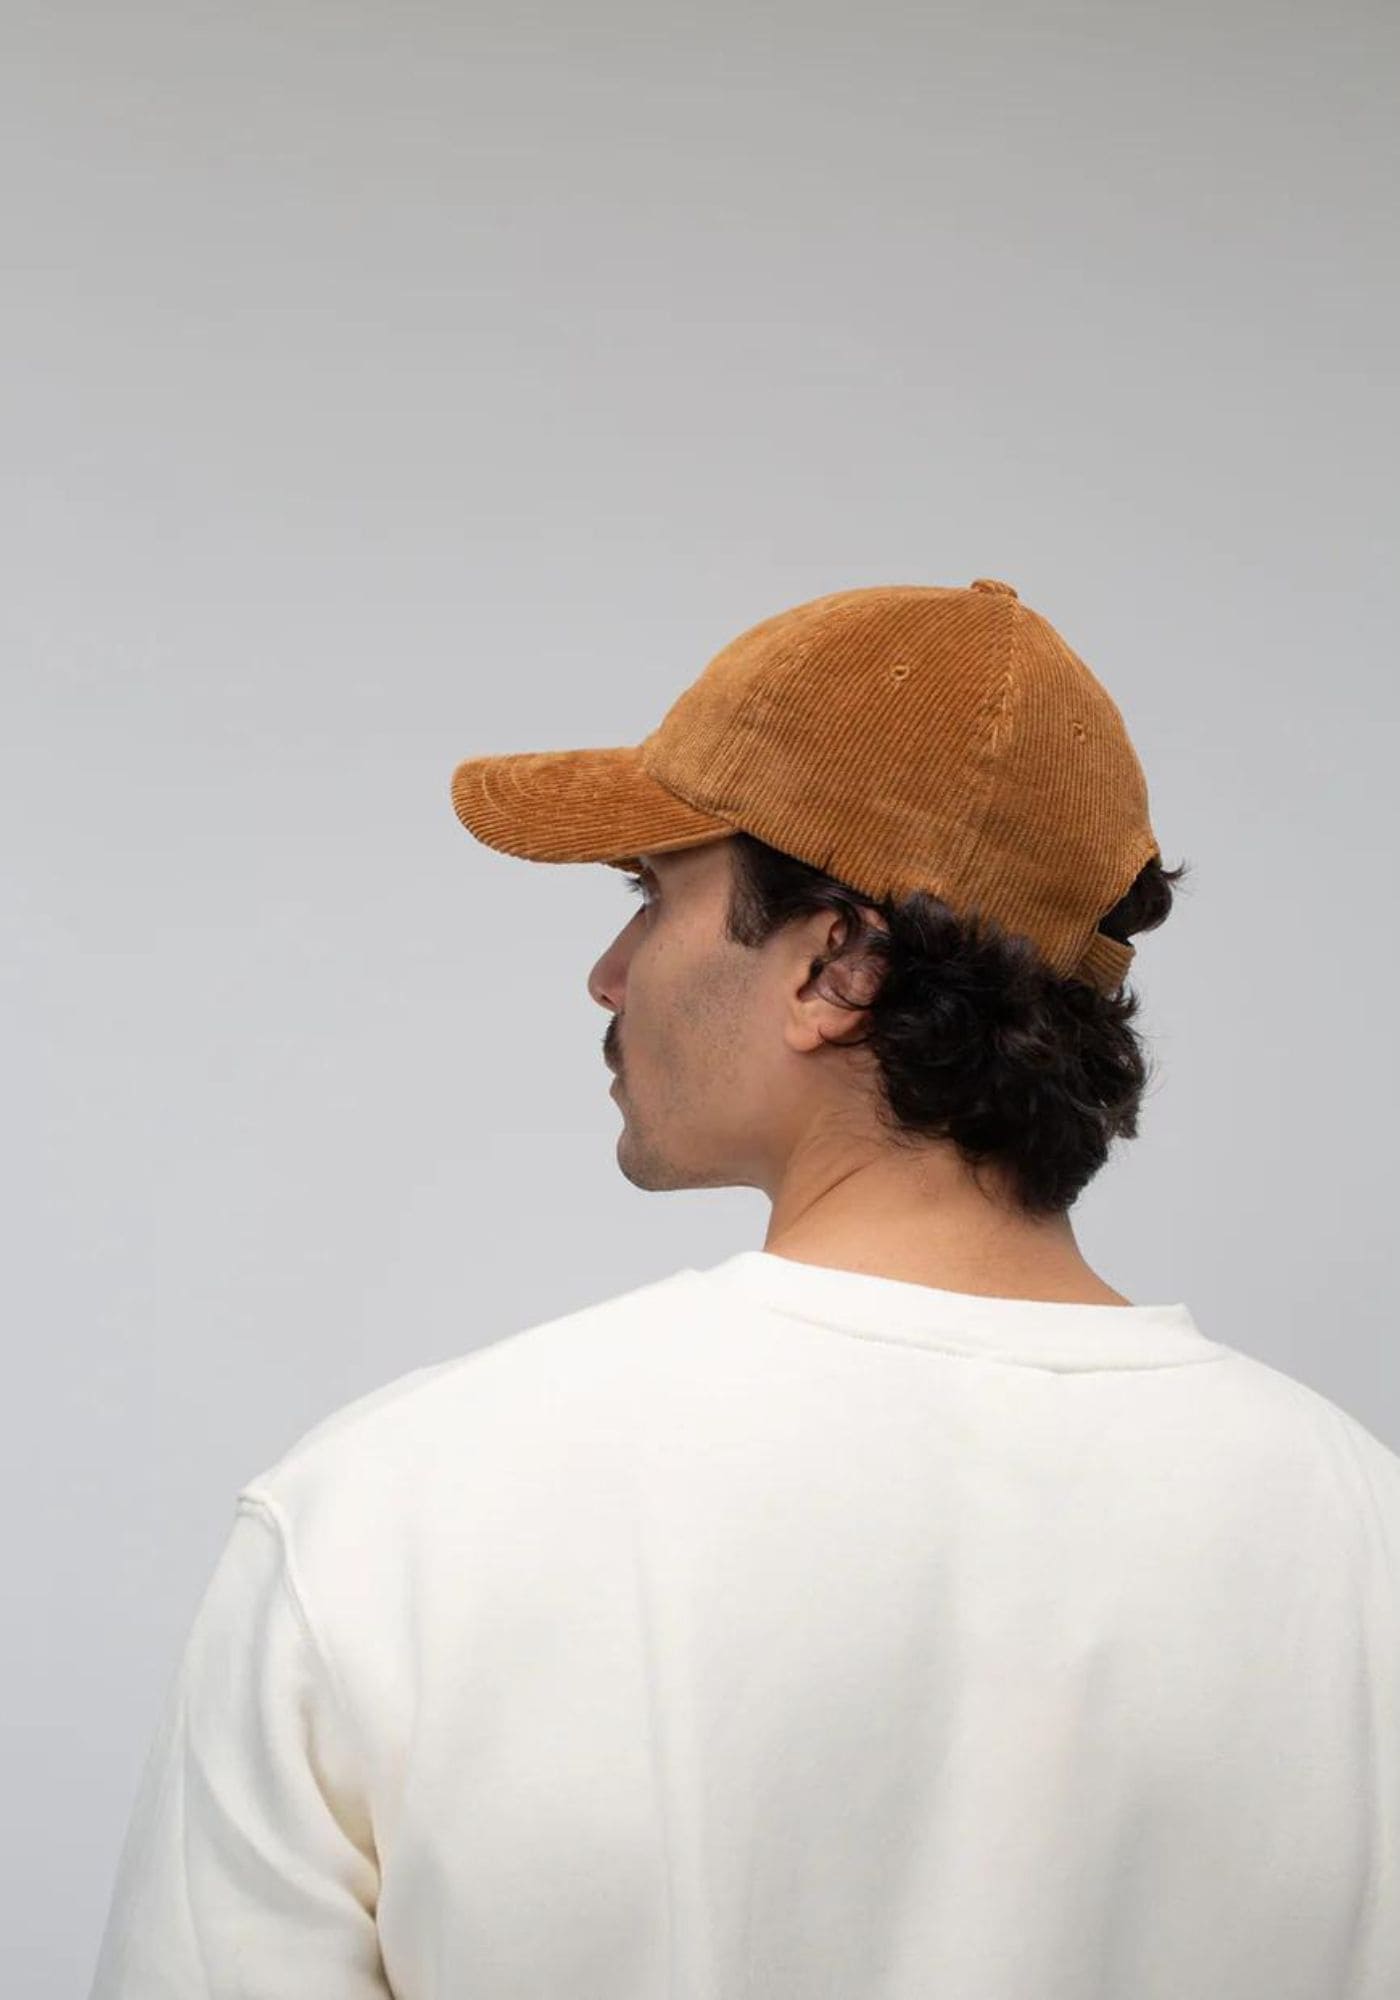 L'homme est de dos et porte la casquette en velours camel de chez Côtelé Paris